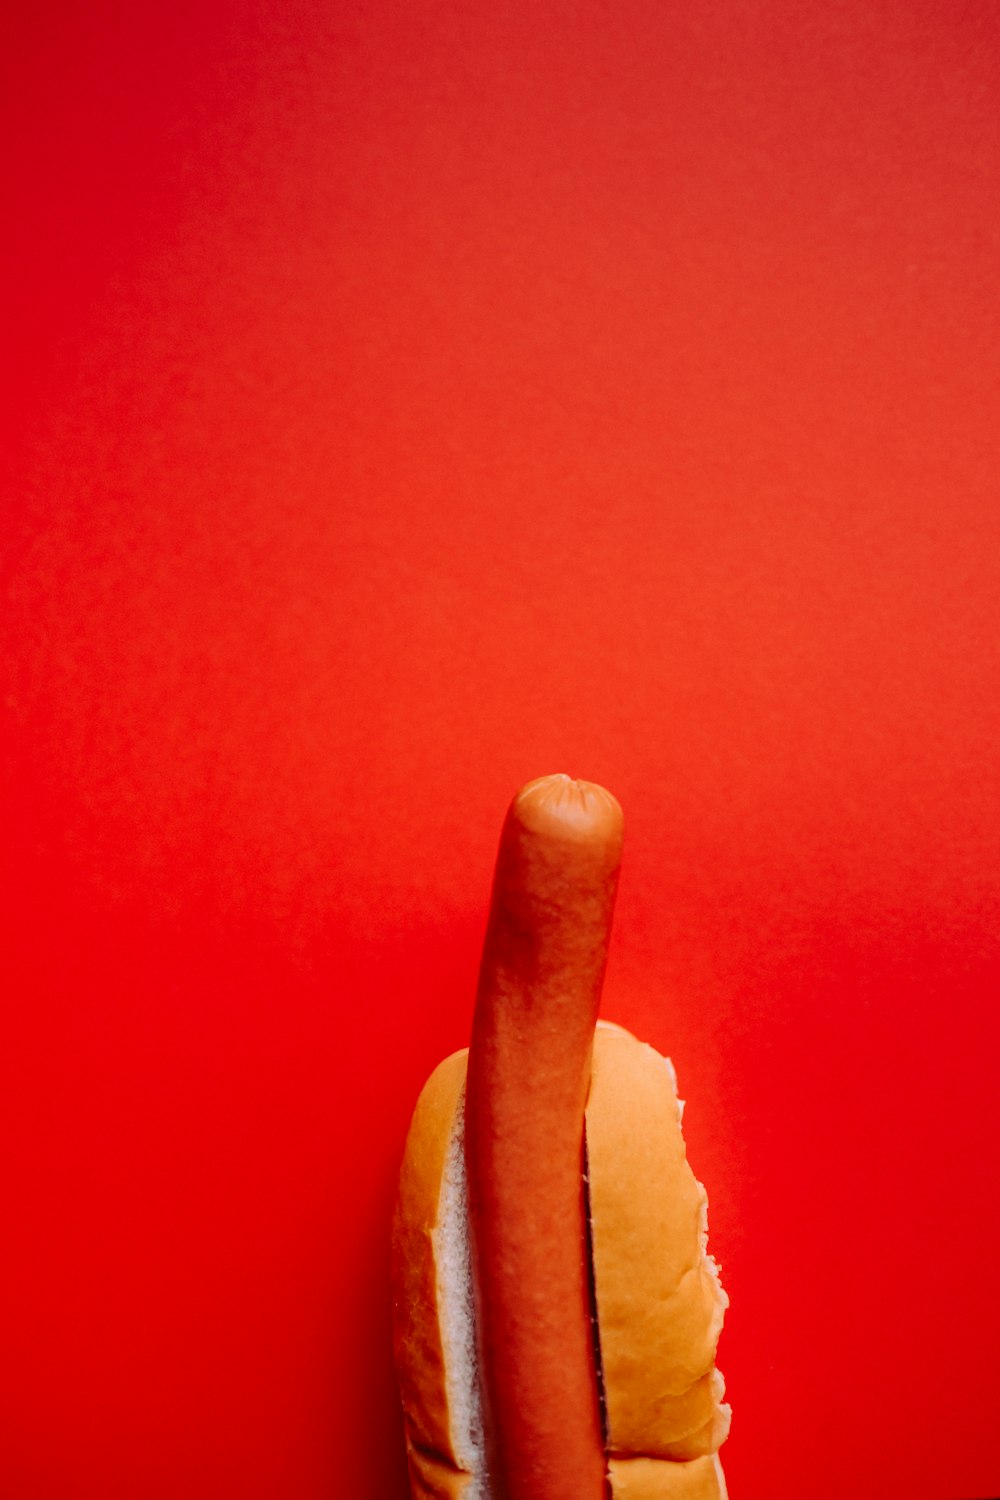 Hotdog-Sandwich auf rotem Hintergrund